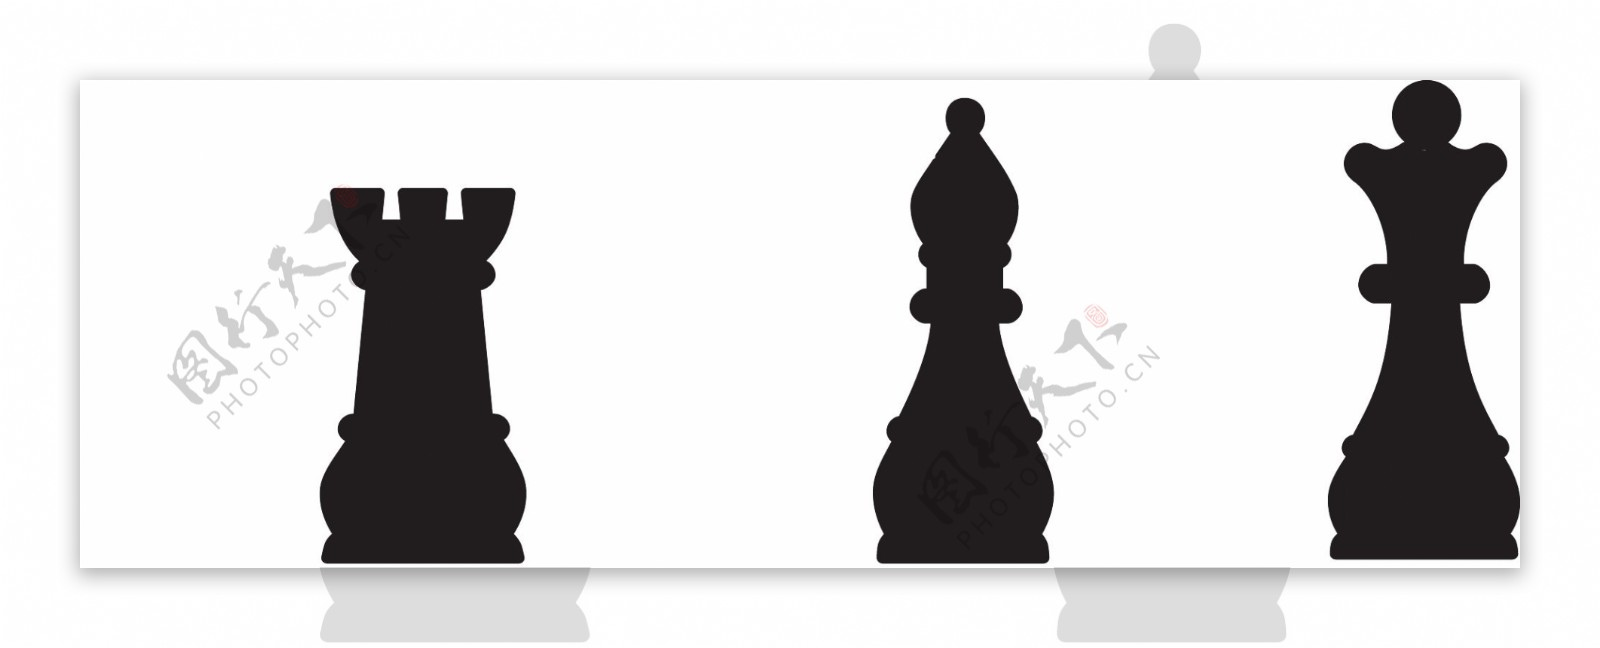 国际象棋图案